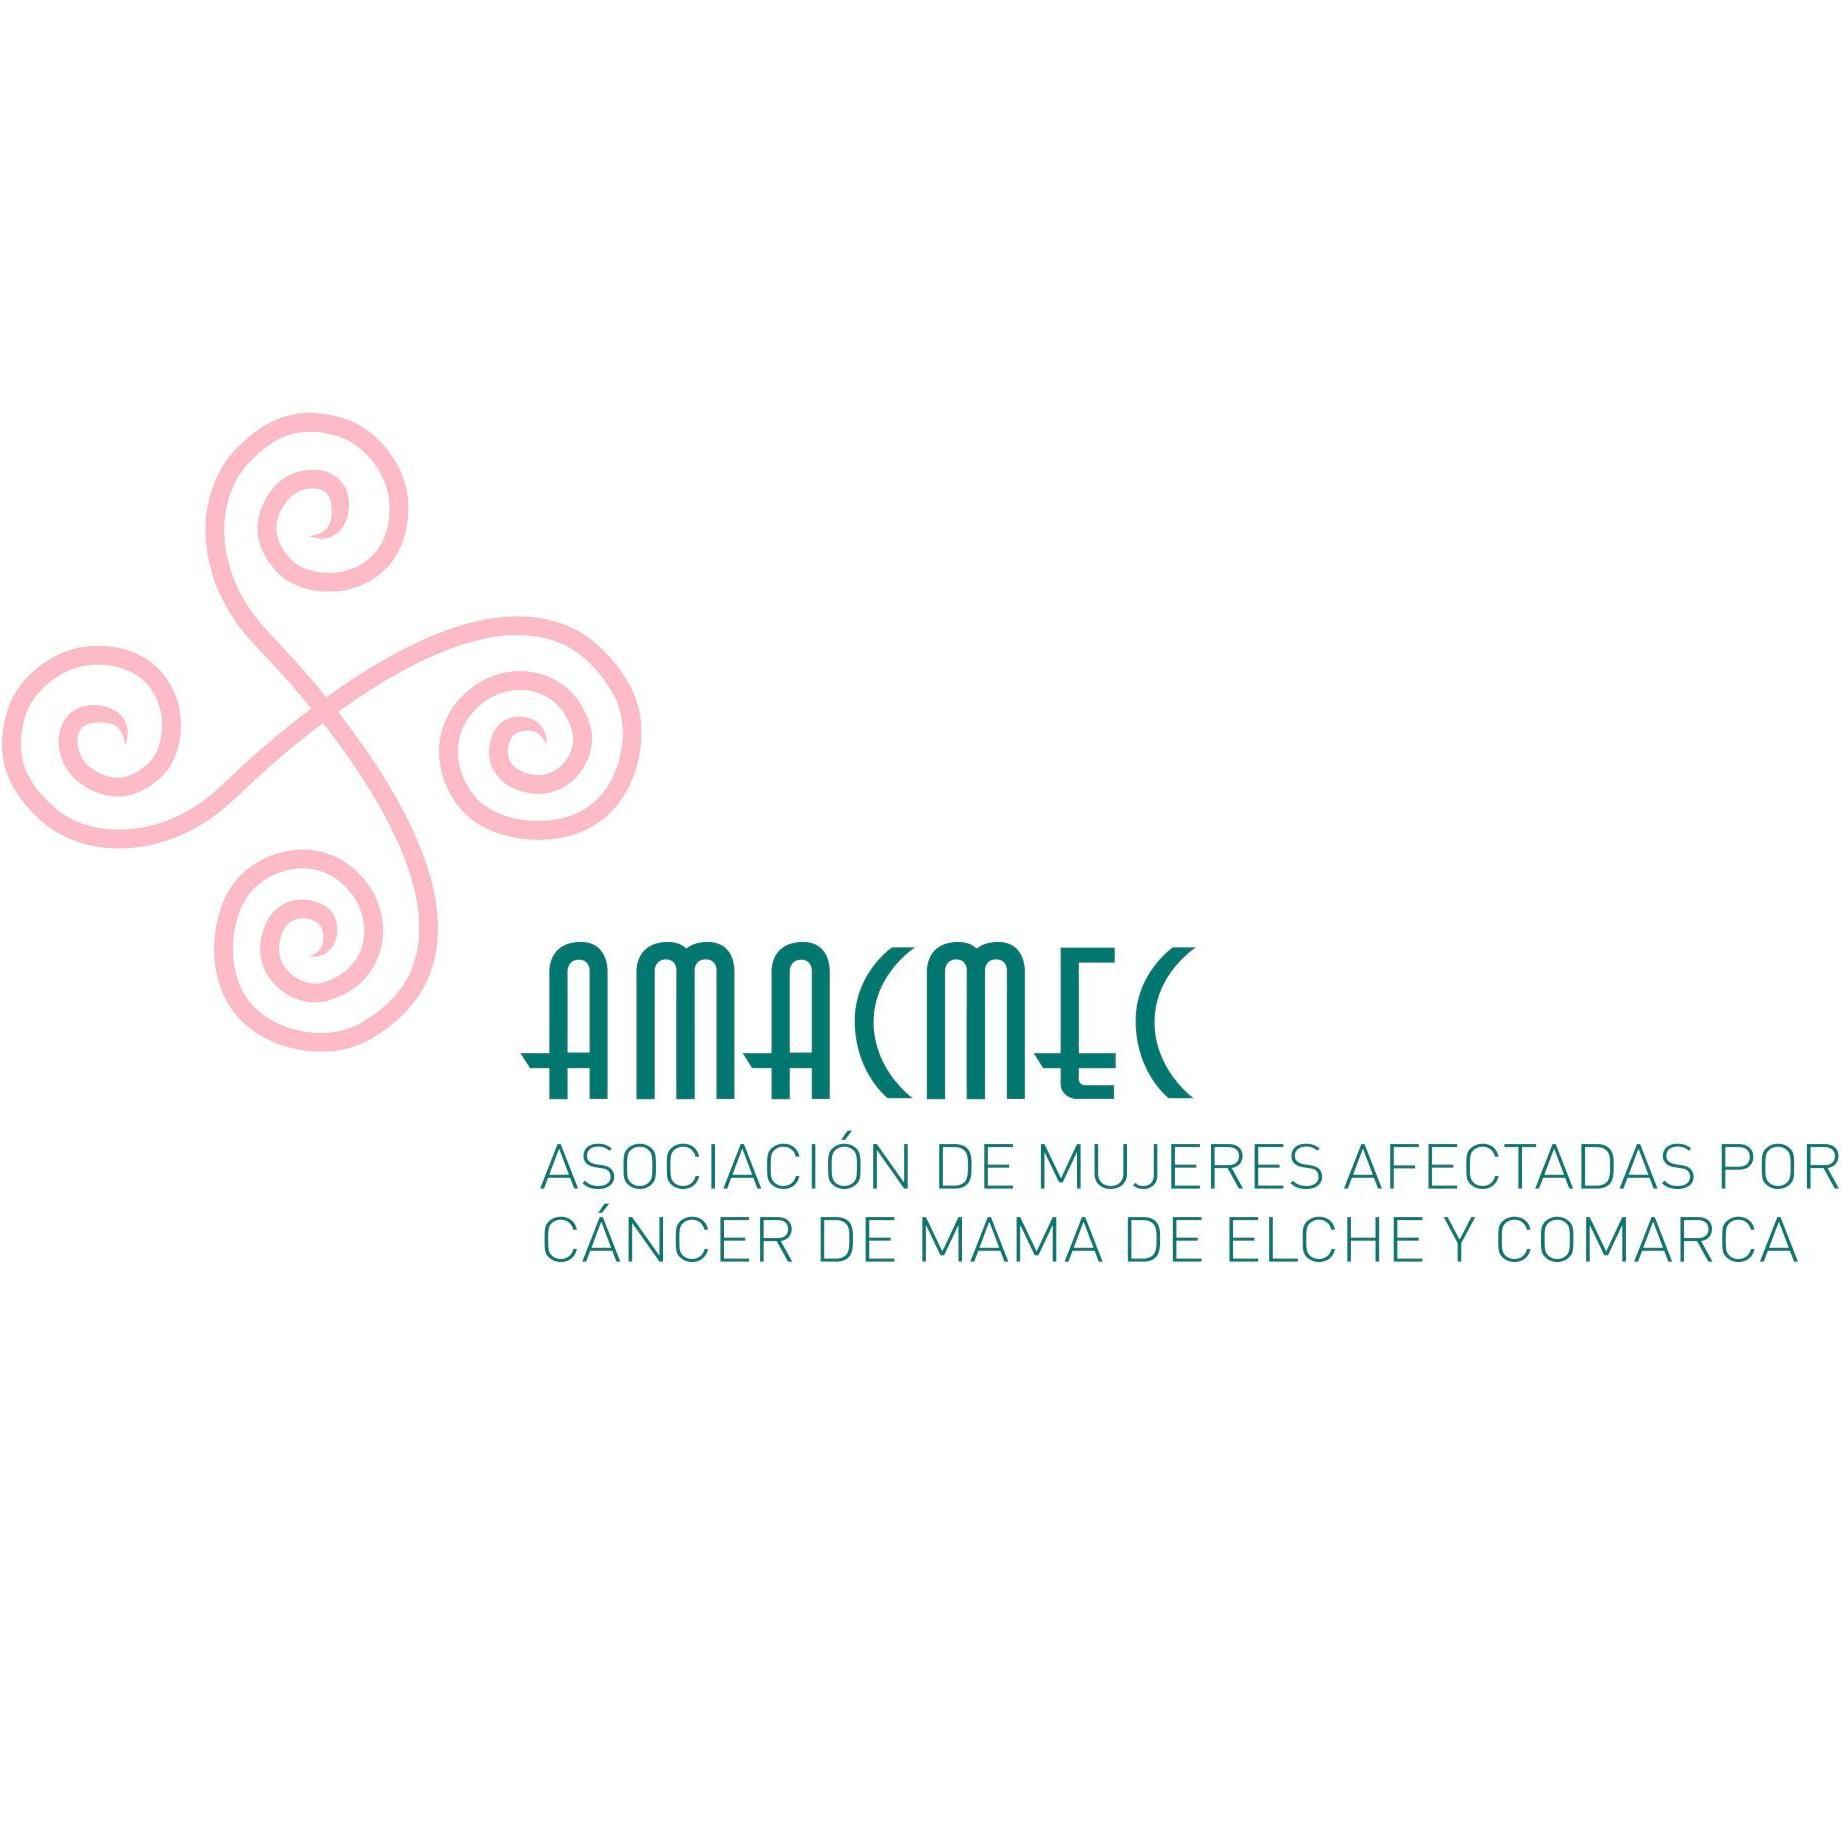 Asociación de Mujeres Afectadas por Cáncer de Mama de Elche y Comarca Profile, news, ratings and communication